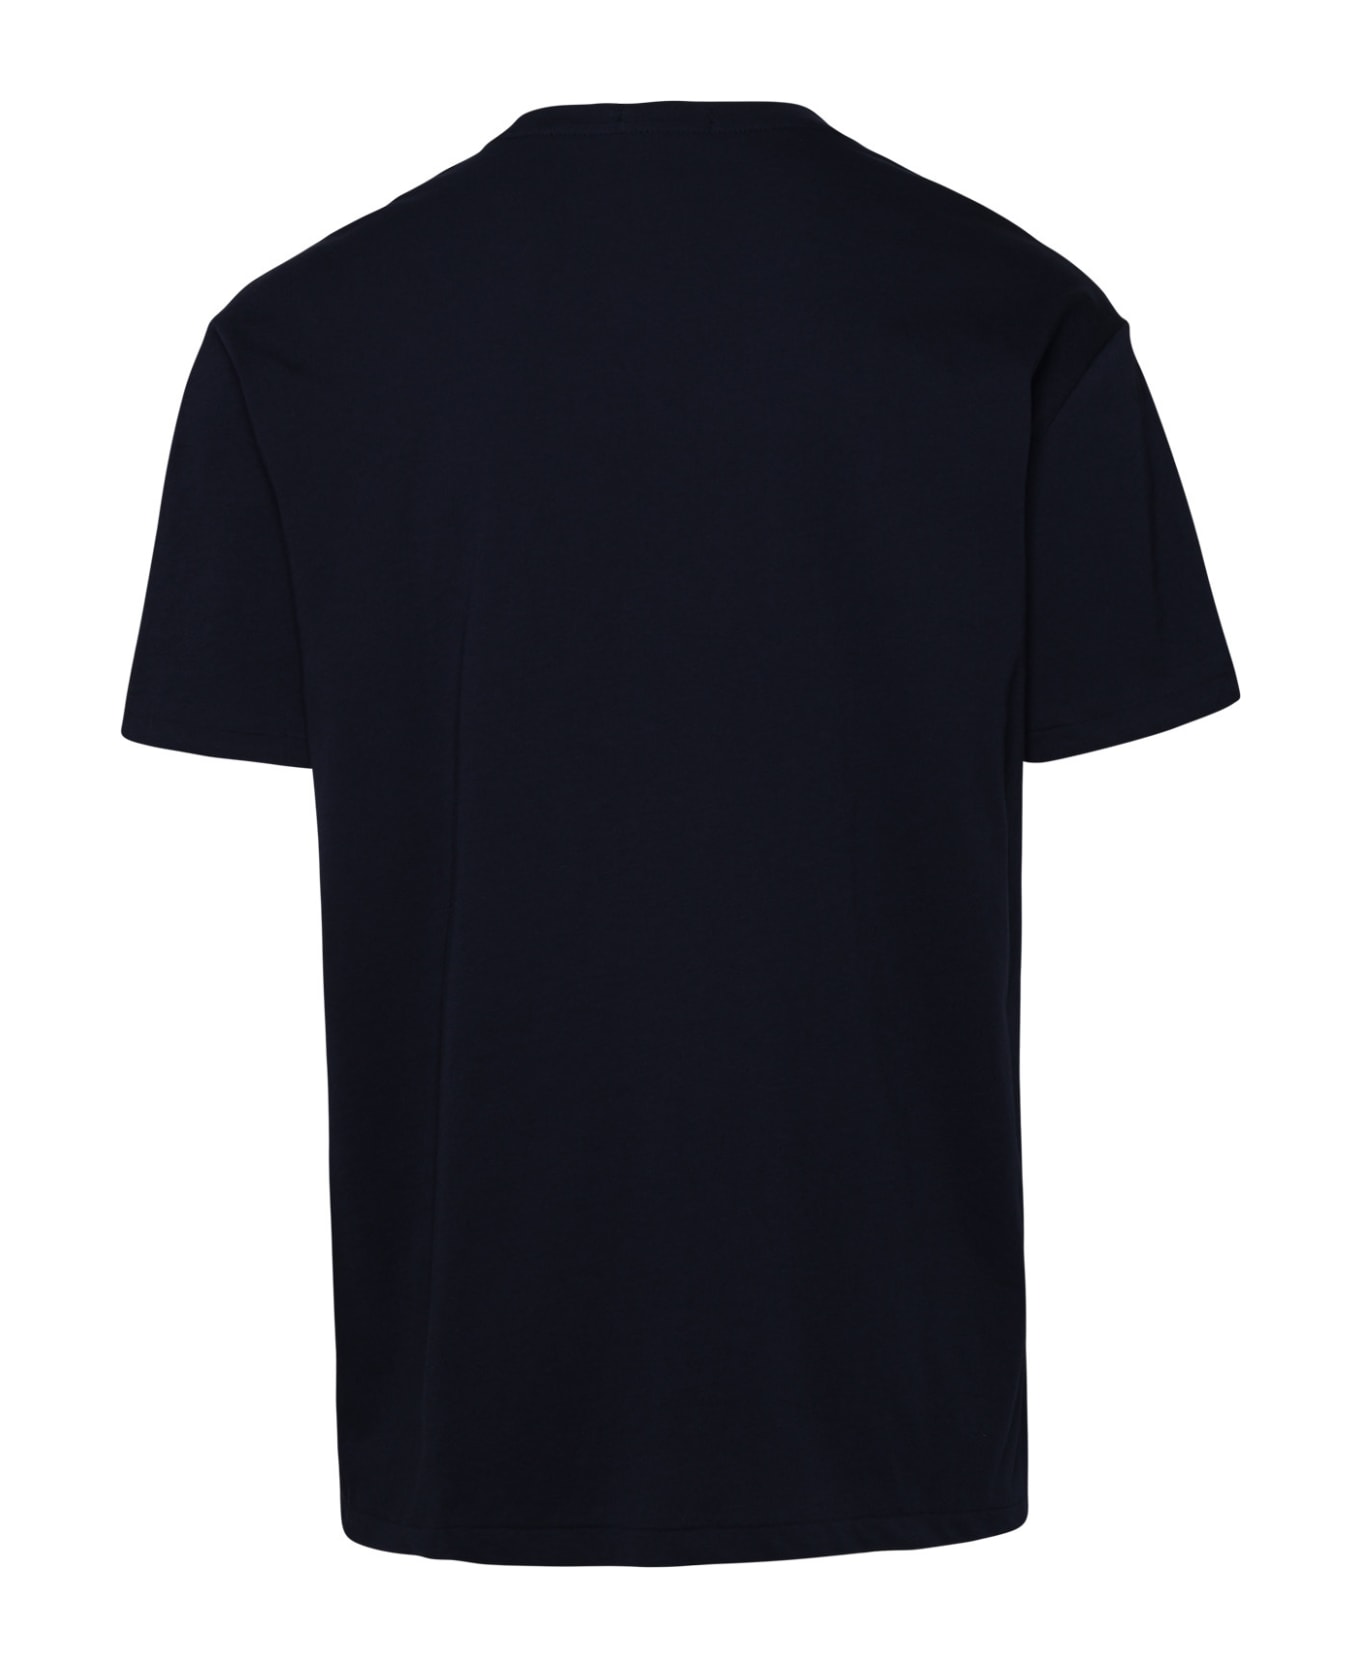 Polo Ralph Lauren Blue Cotton T-shirt - Navy